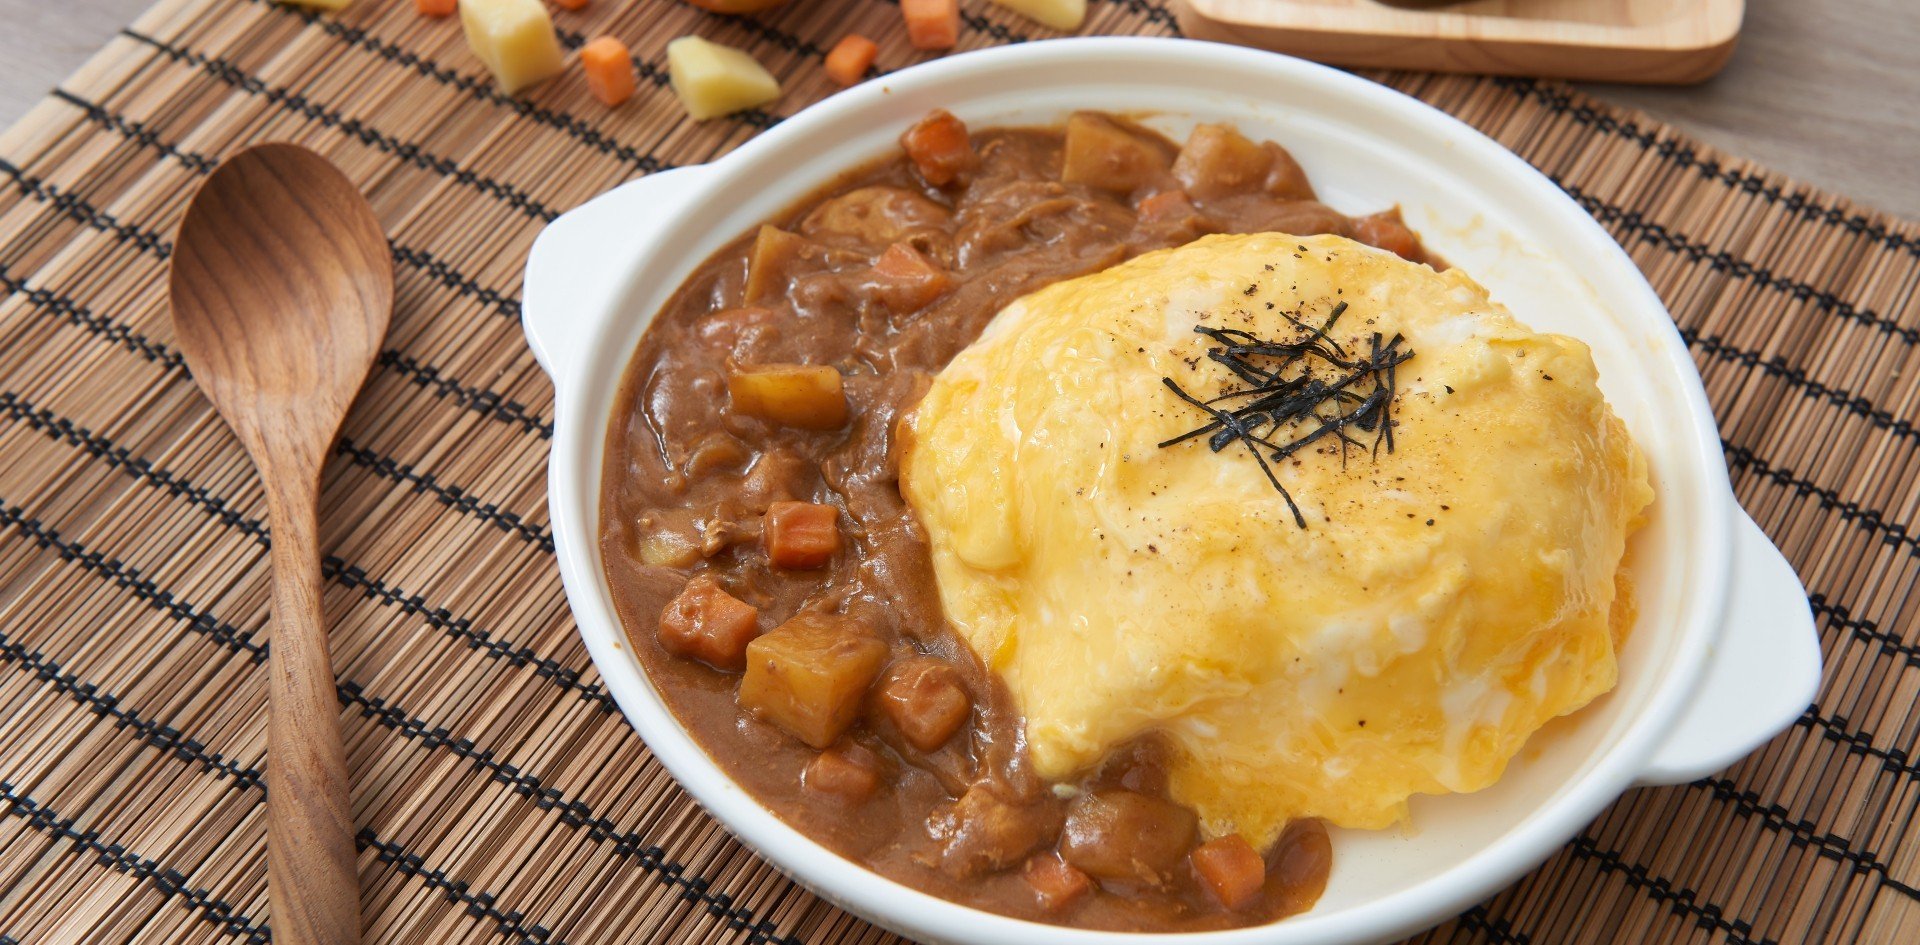 วิธีทำ “แกงกะหรี่หมูไข่ข้น” เมนูอาหารญี่ปุ่น เข้มข้นแบบต้นตำรับ!